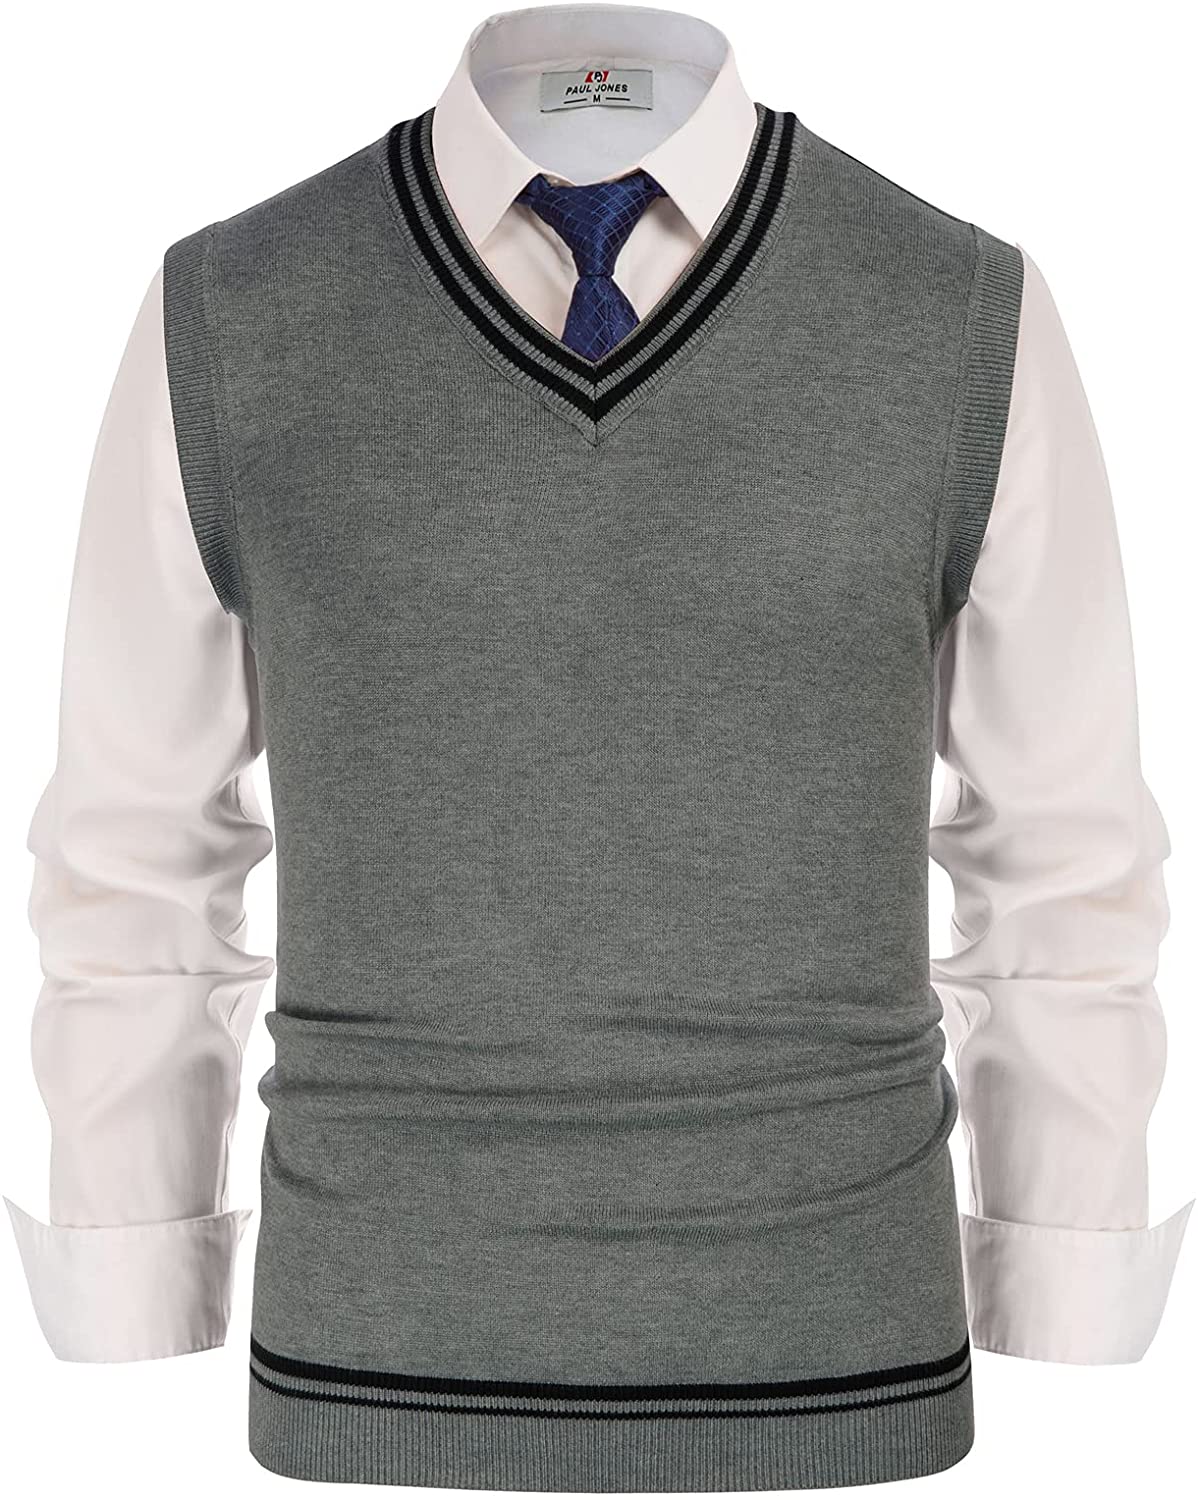 PaulJones Mens V-Neck Slim Fit Argyle Sweater Vest Sleeveless Knitted Gilet 